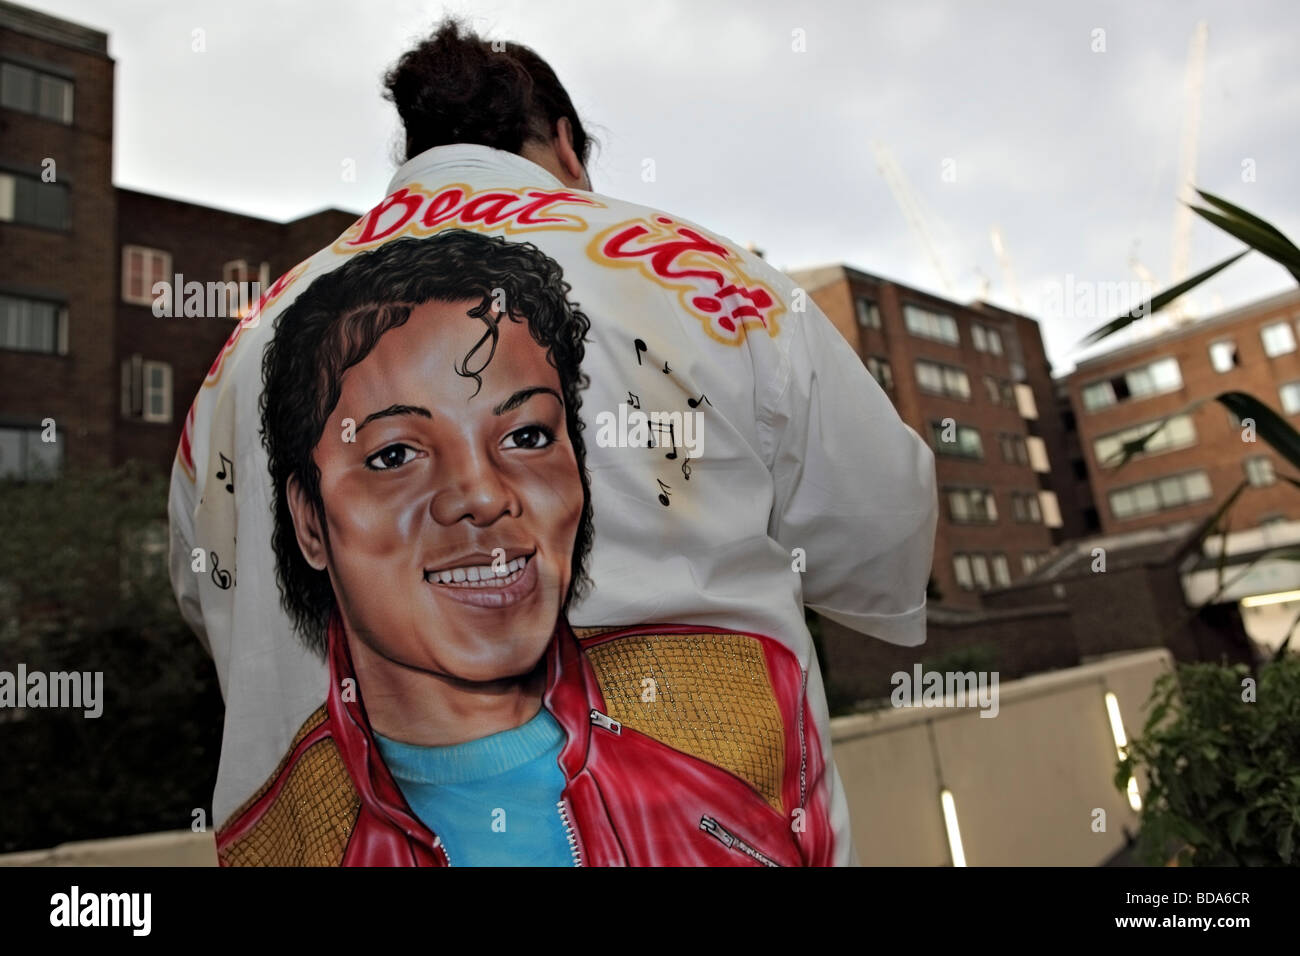 Michael Jackson la ventola di posa con la maglietta personalizzata all'interno di un consiglio del Regno Unito station wagon. Foto Stock